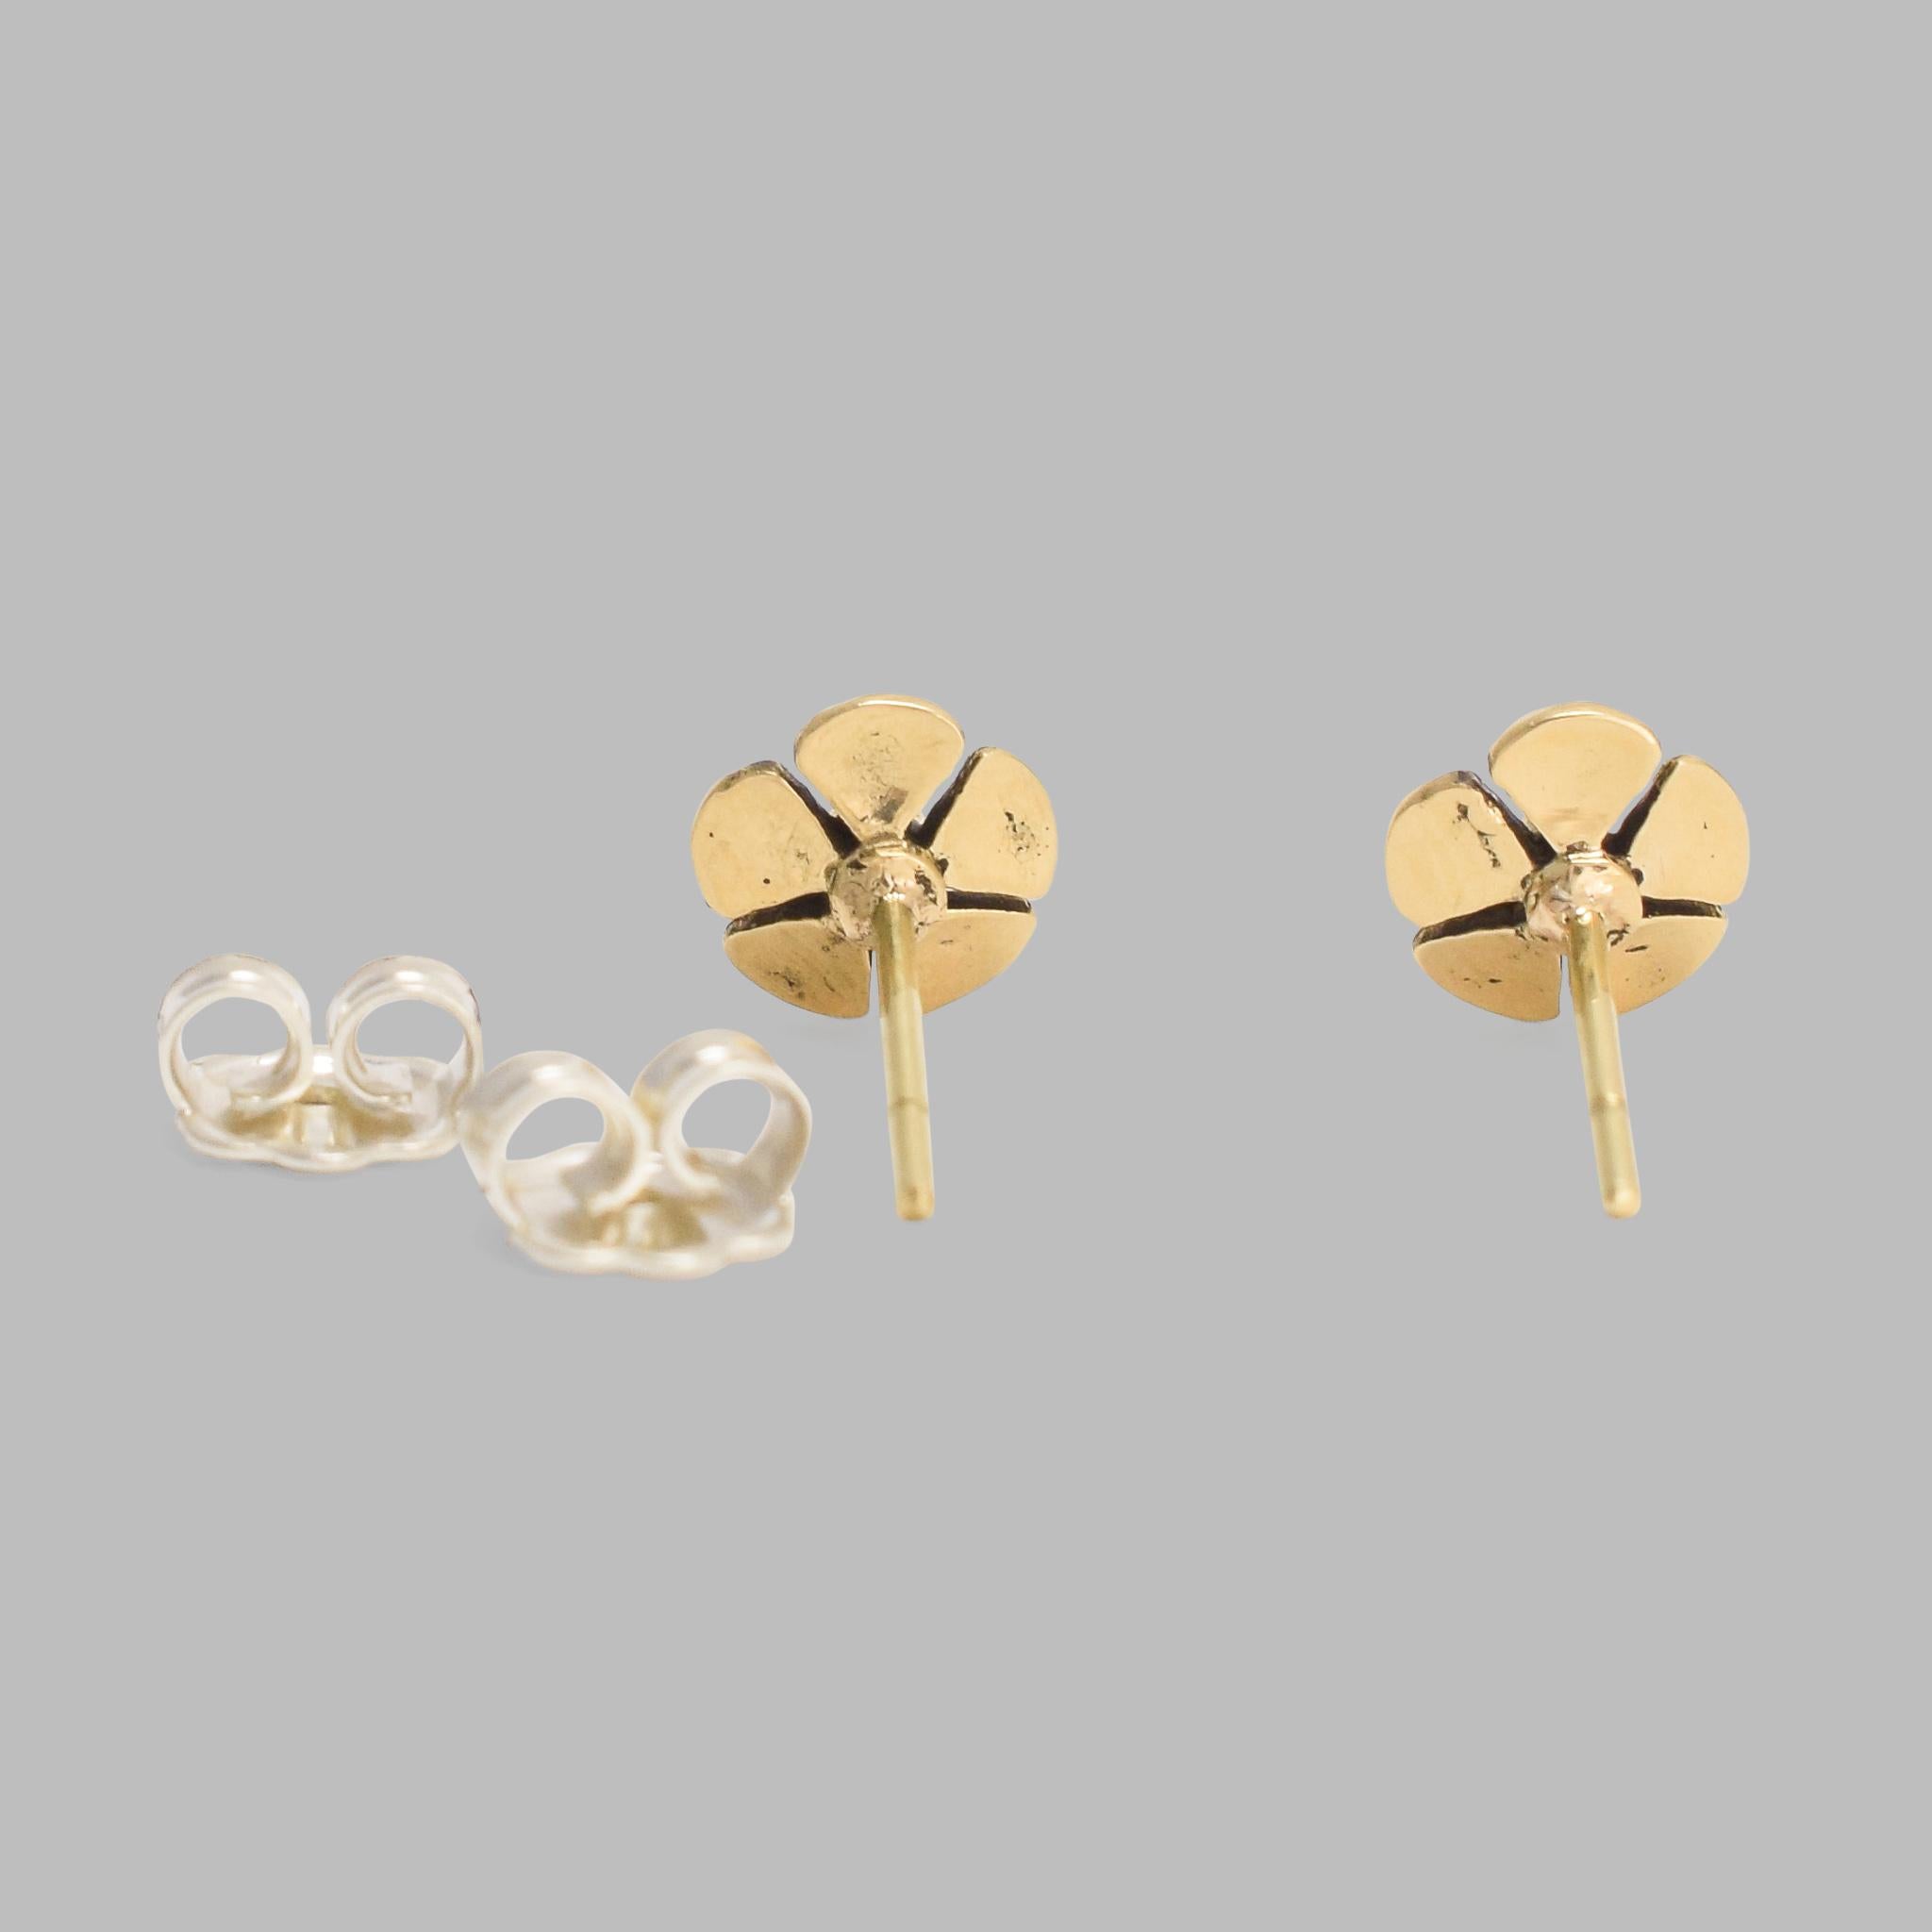 bespoke silver earrings